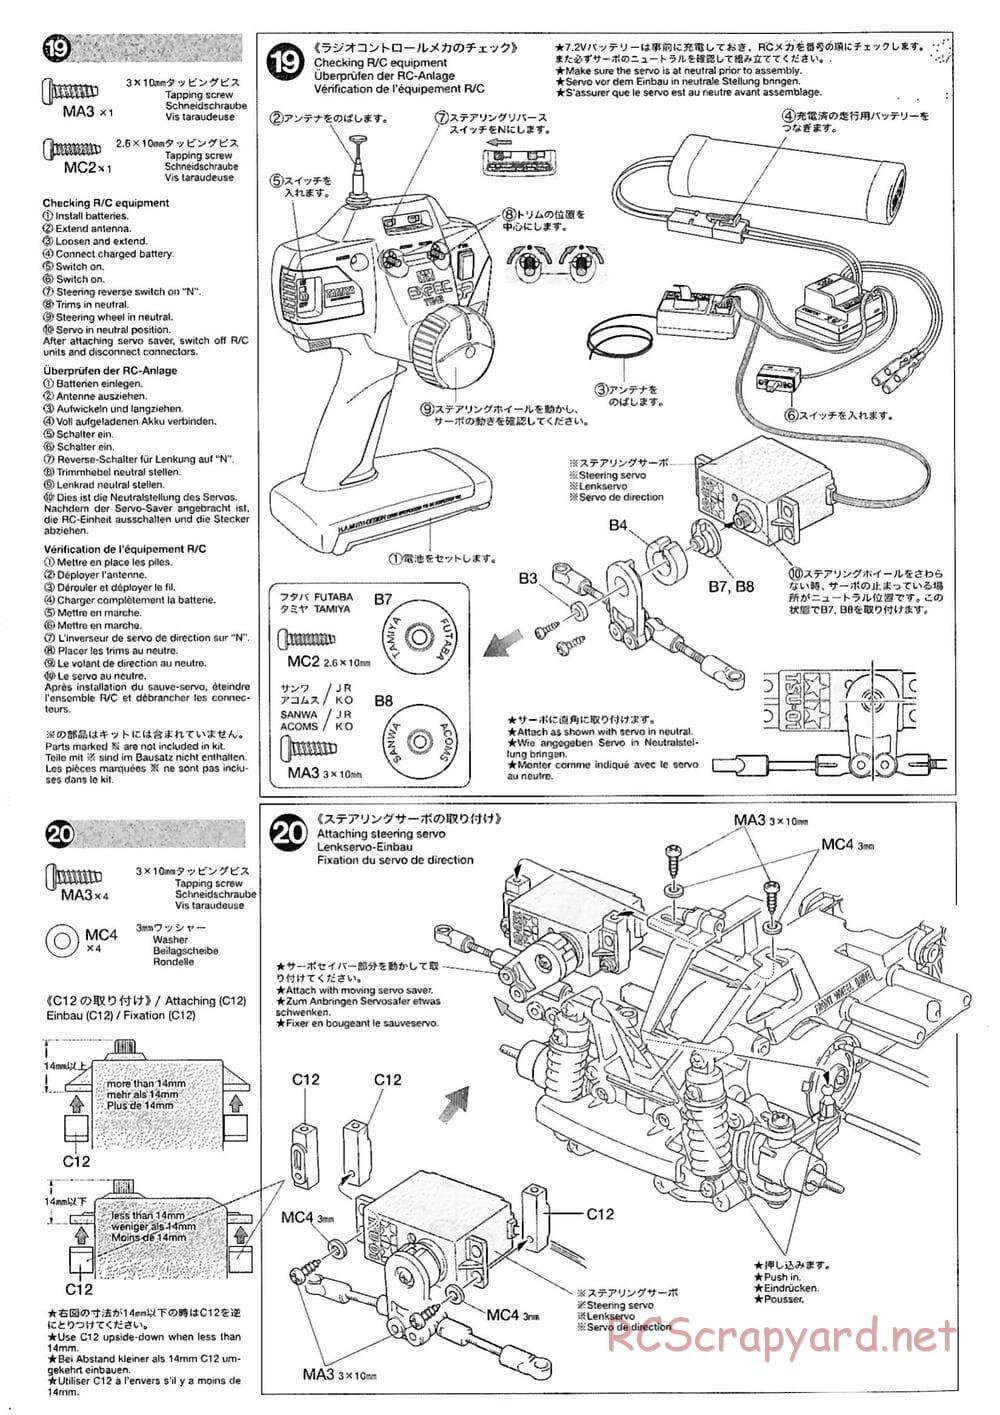 Tamiya - M-03M Chassis - Manual - Page 10